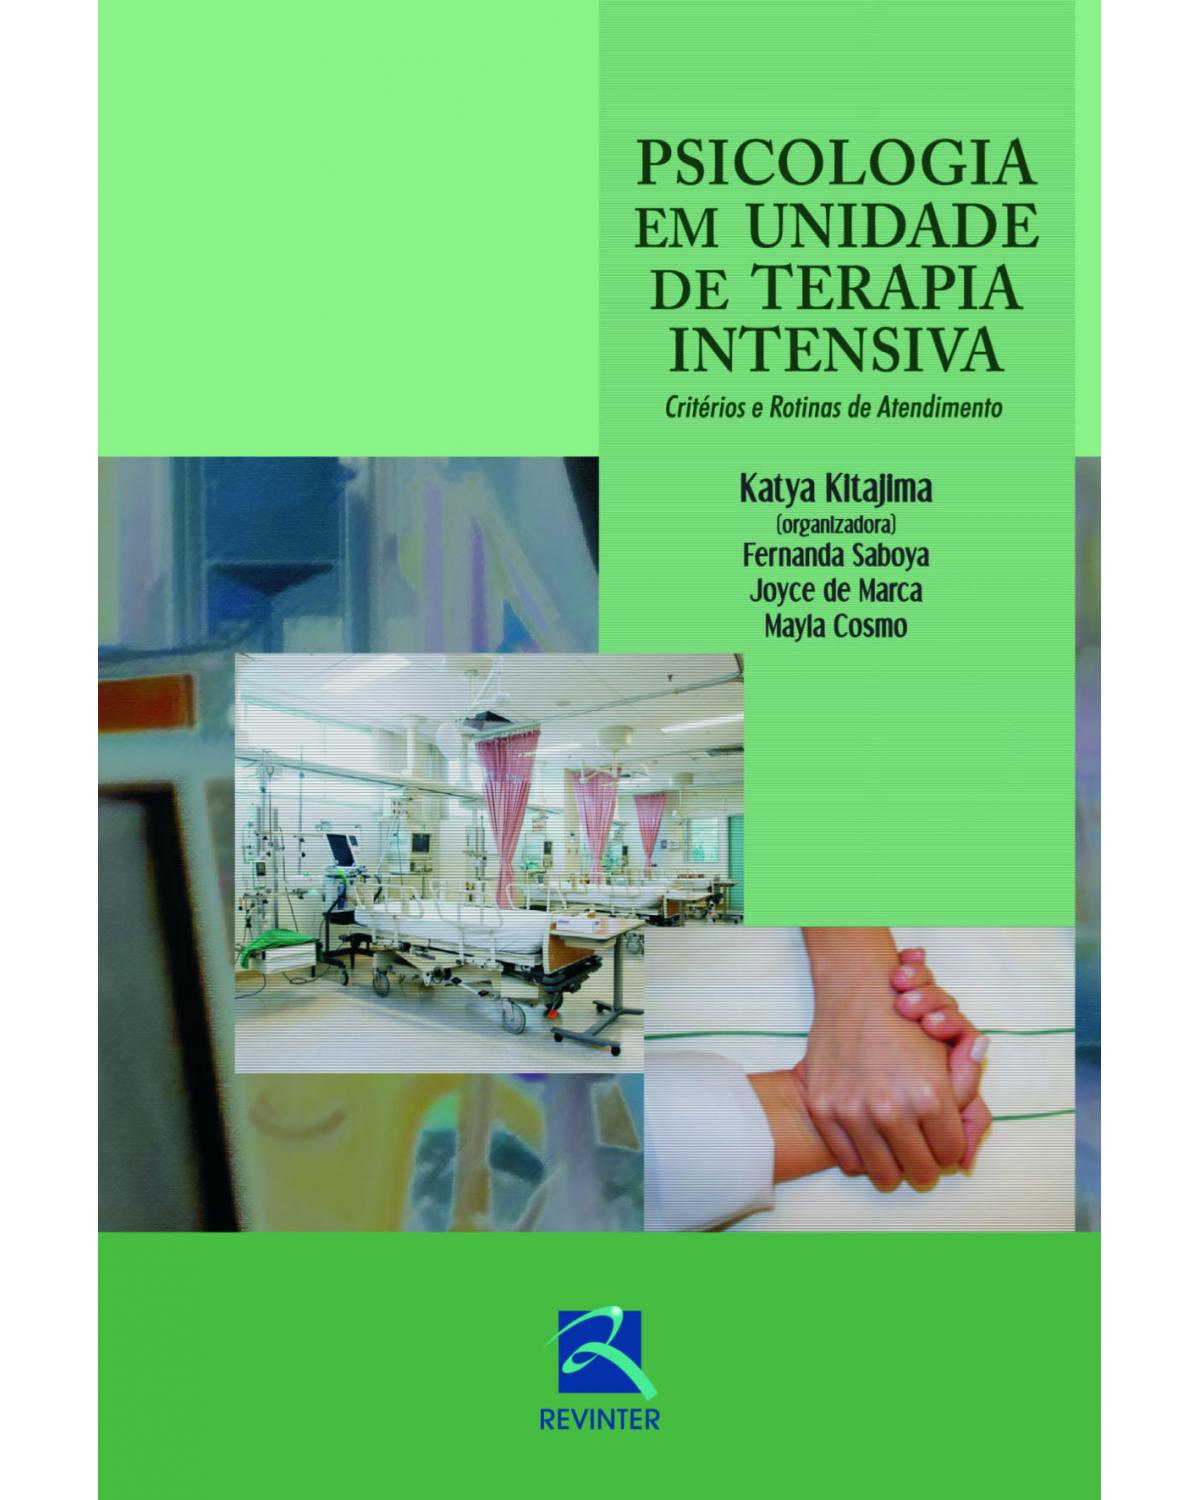 Psicologia em unidade de terapia intensiva - critérios e rotinas de atendimento - 1ª Edição | 2014